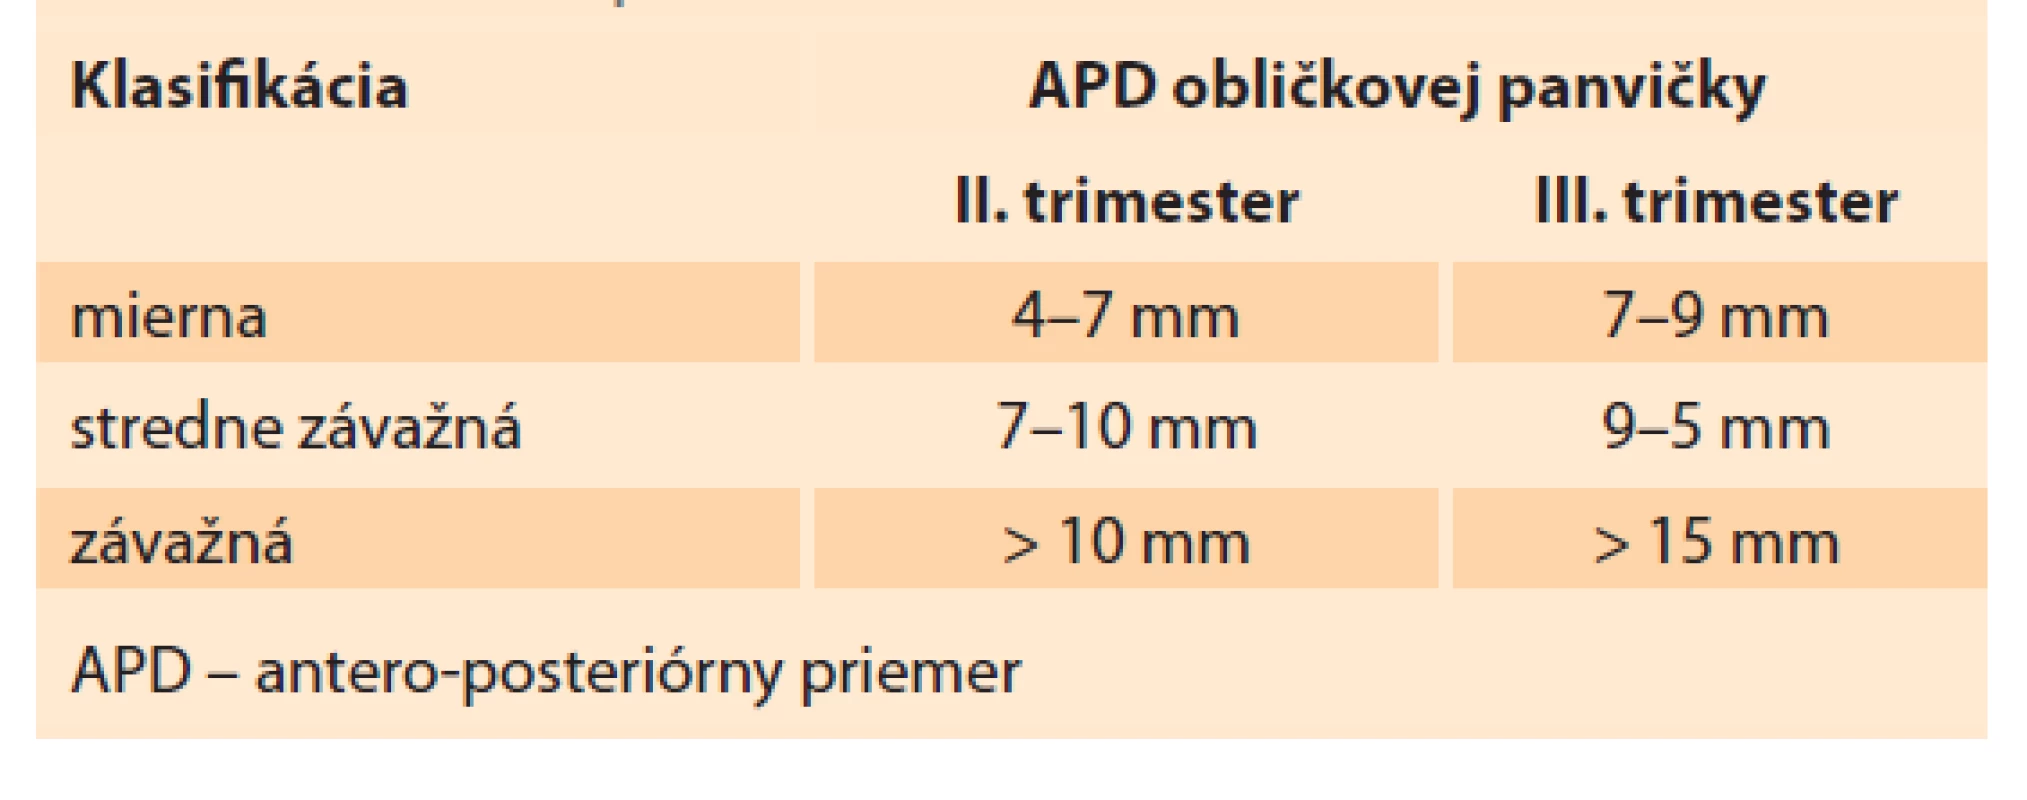 Antenatálna klasifikácia hydronefrózy pomocou
APD obličkovej panvičky.<br>
Tab. 1. Antenatal classification of hydronephrosis using
APD of the renal pelvis.